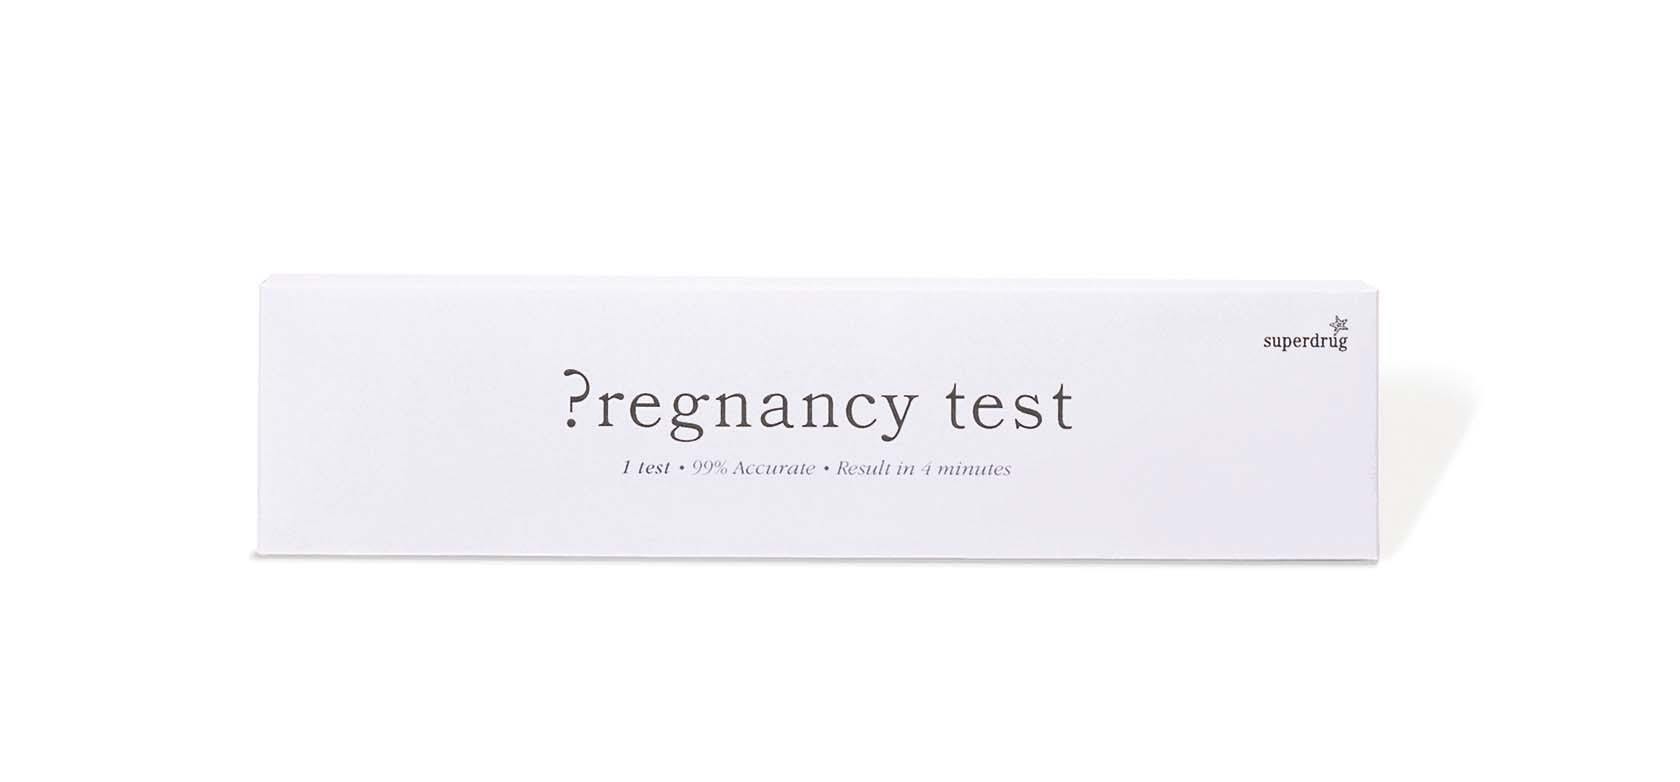 WMH-SUPERDRUG-PREGNANCY-TEST-WEB image